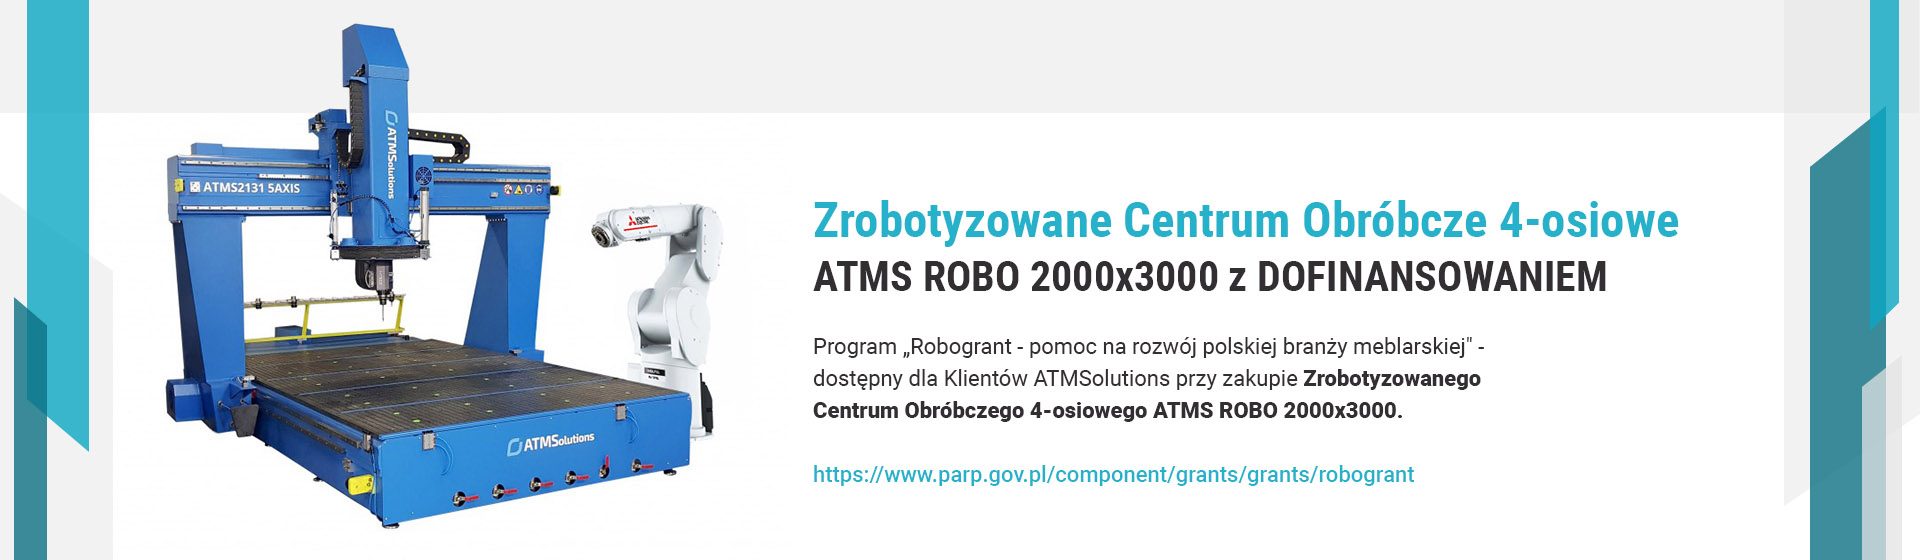 Zrobotyzowane Centrum Obróbcze 4-osiowe ATMS ROBO 2000x3000 z DOFINANSOWANIEM